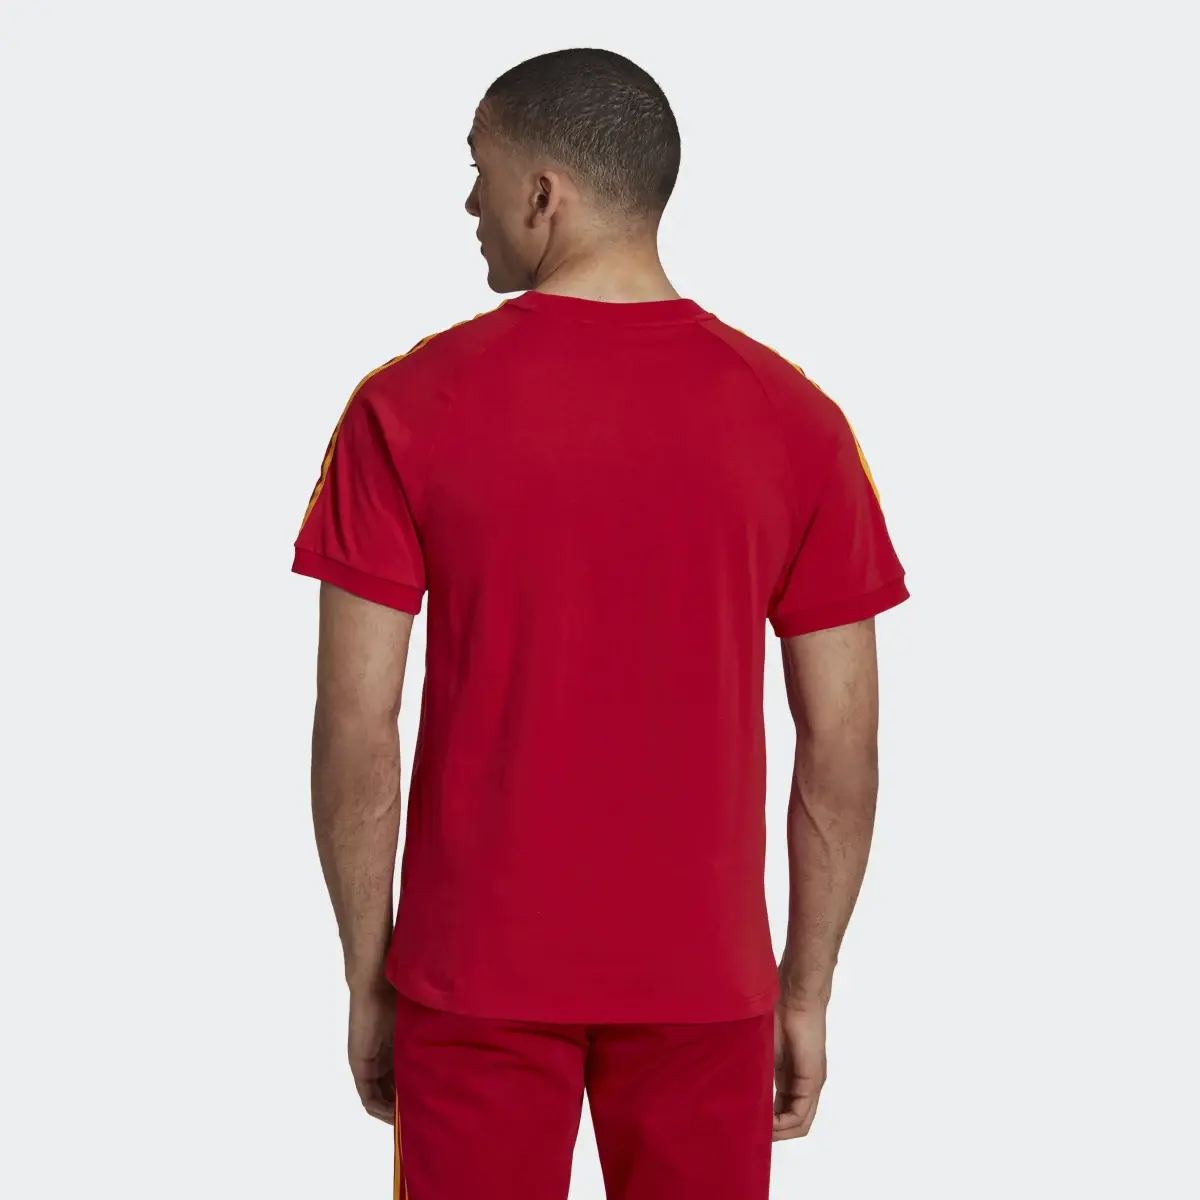 Adidas 3-Stripes T-Shirt. 3